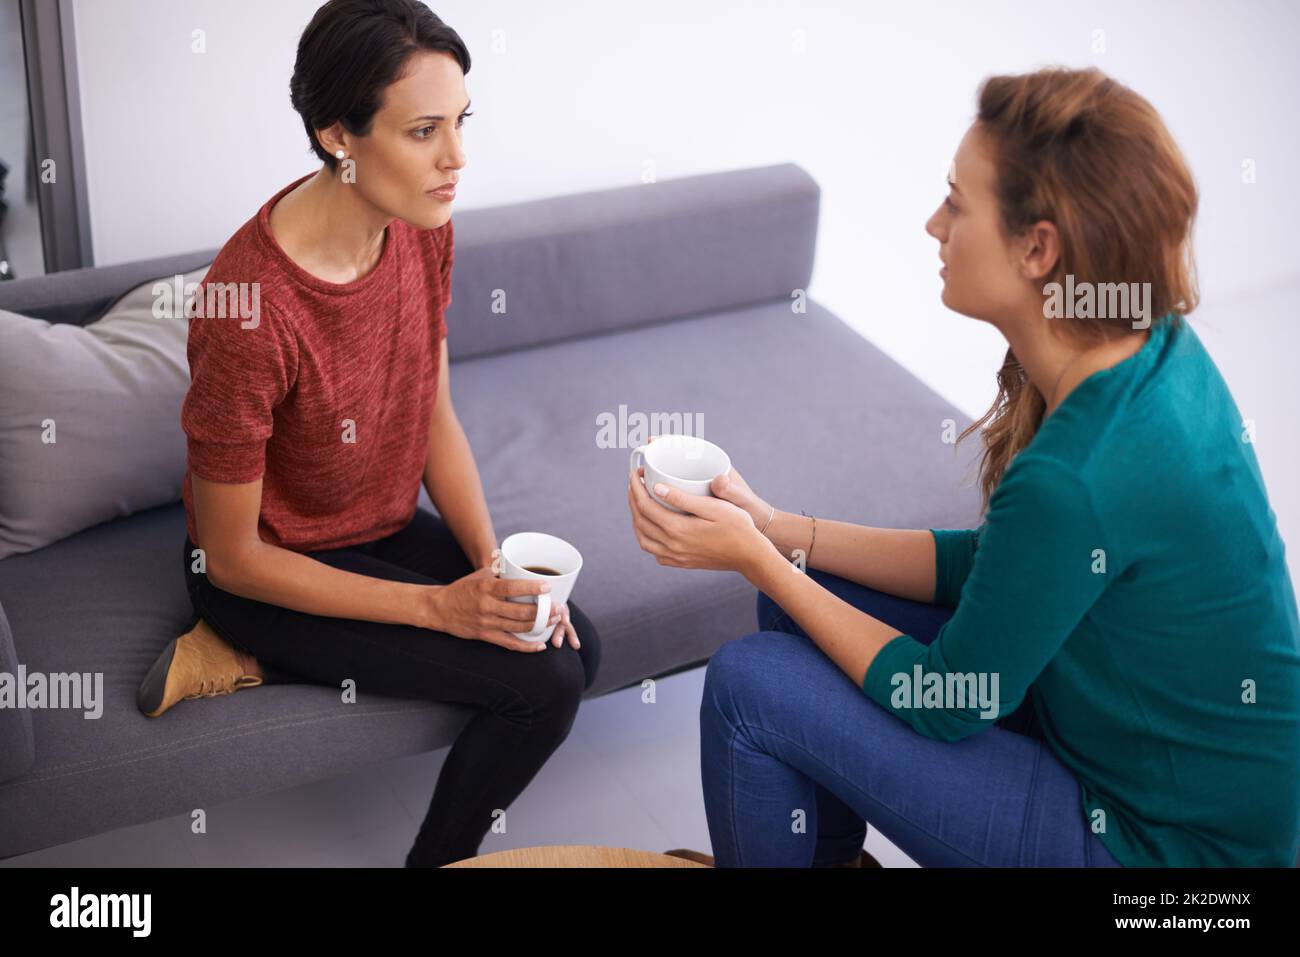 Discussion rapide sur le café. Photo de deux femmes professionnelles ayant une discussion dans un cadre de bureau informel. Banque D'Images